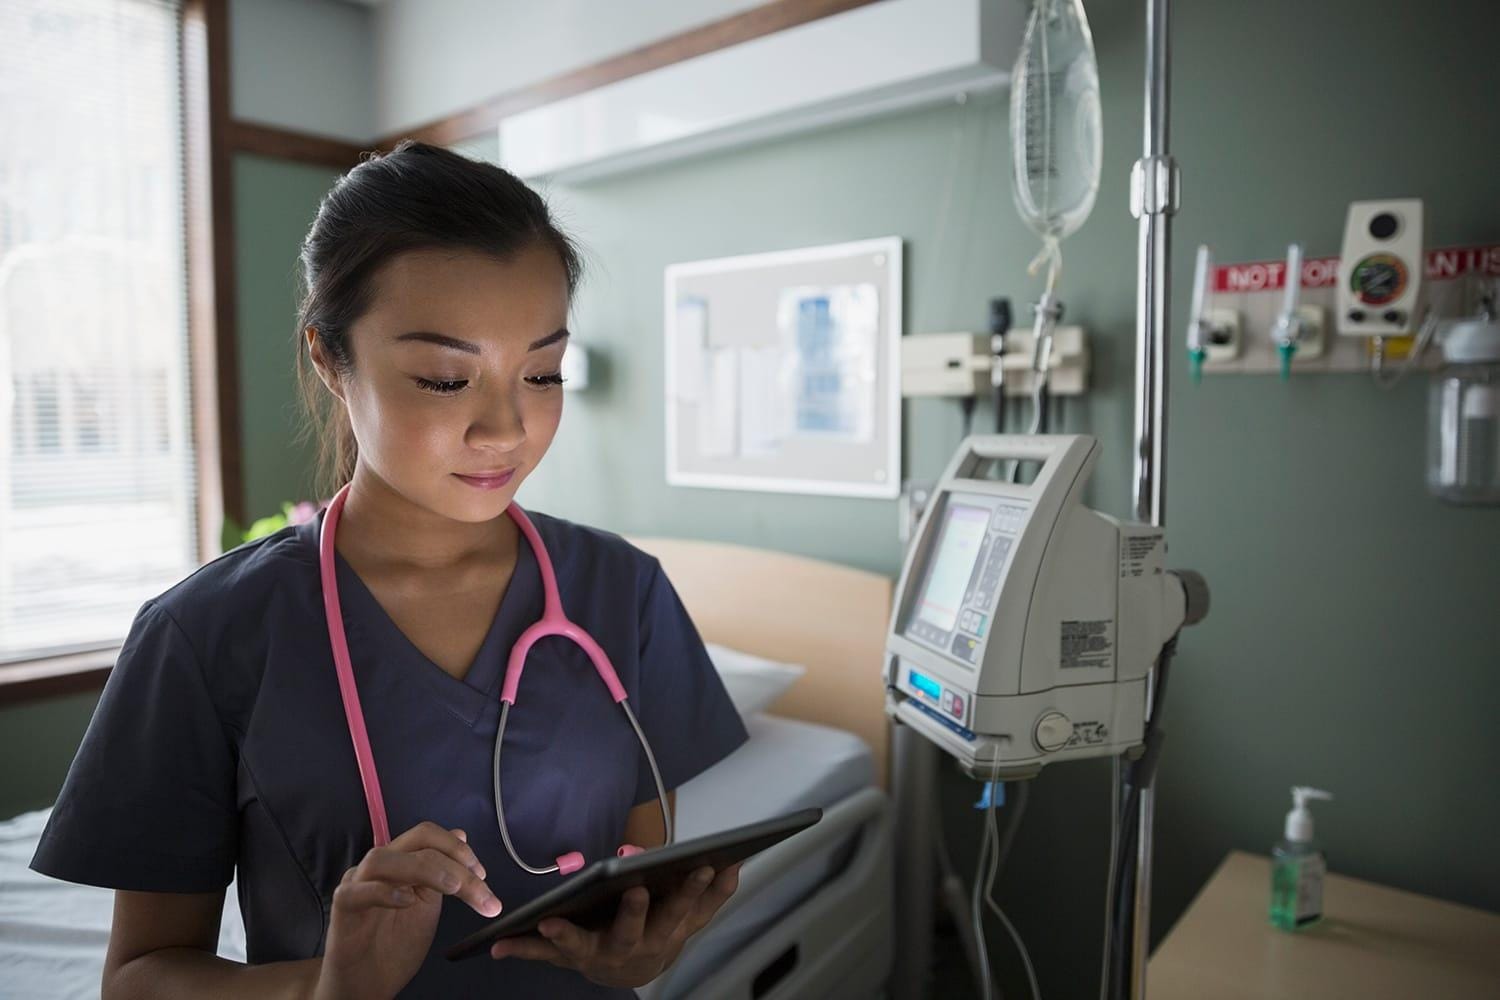 Nurse using digital tablet in hospital room